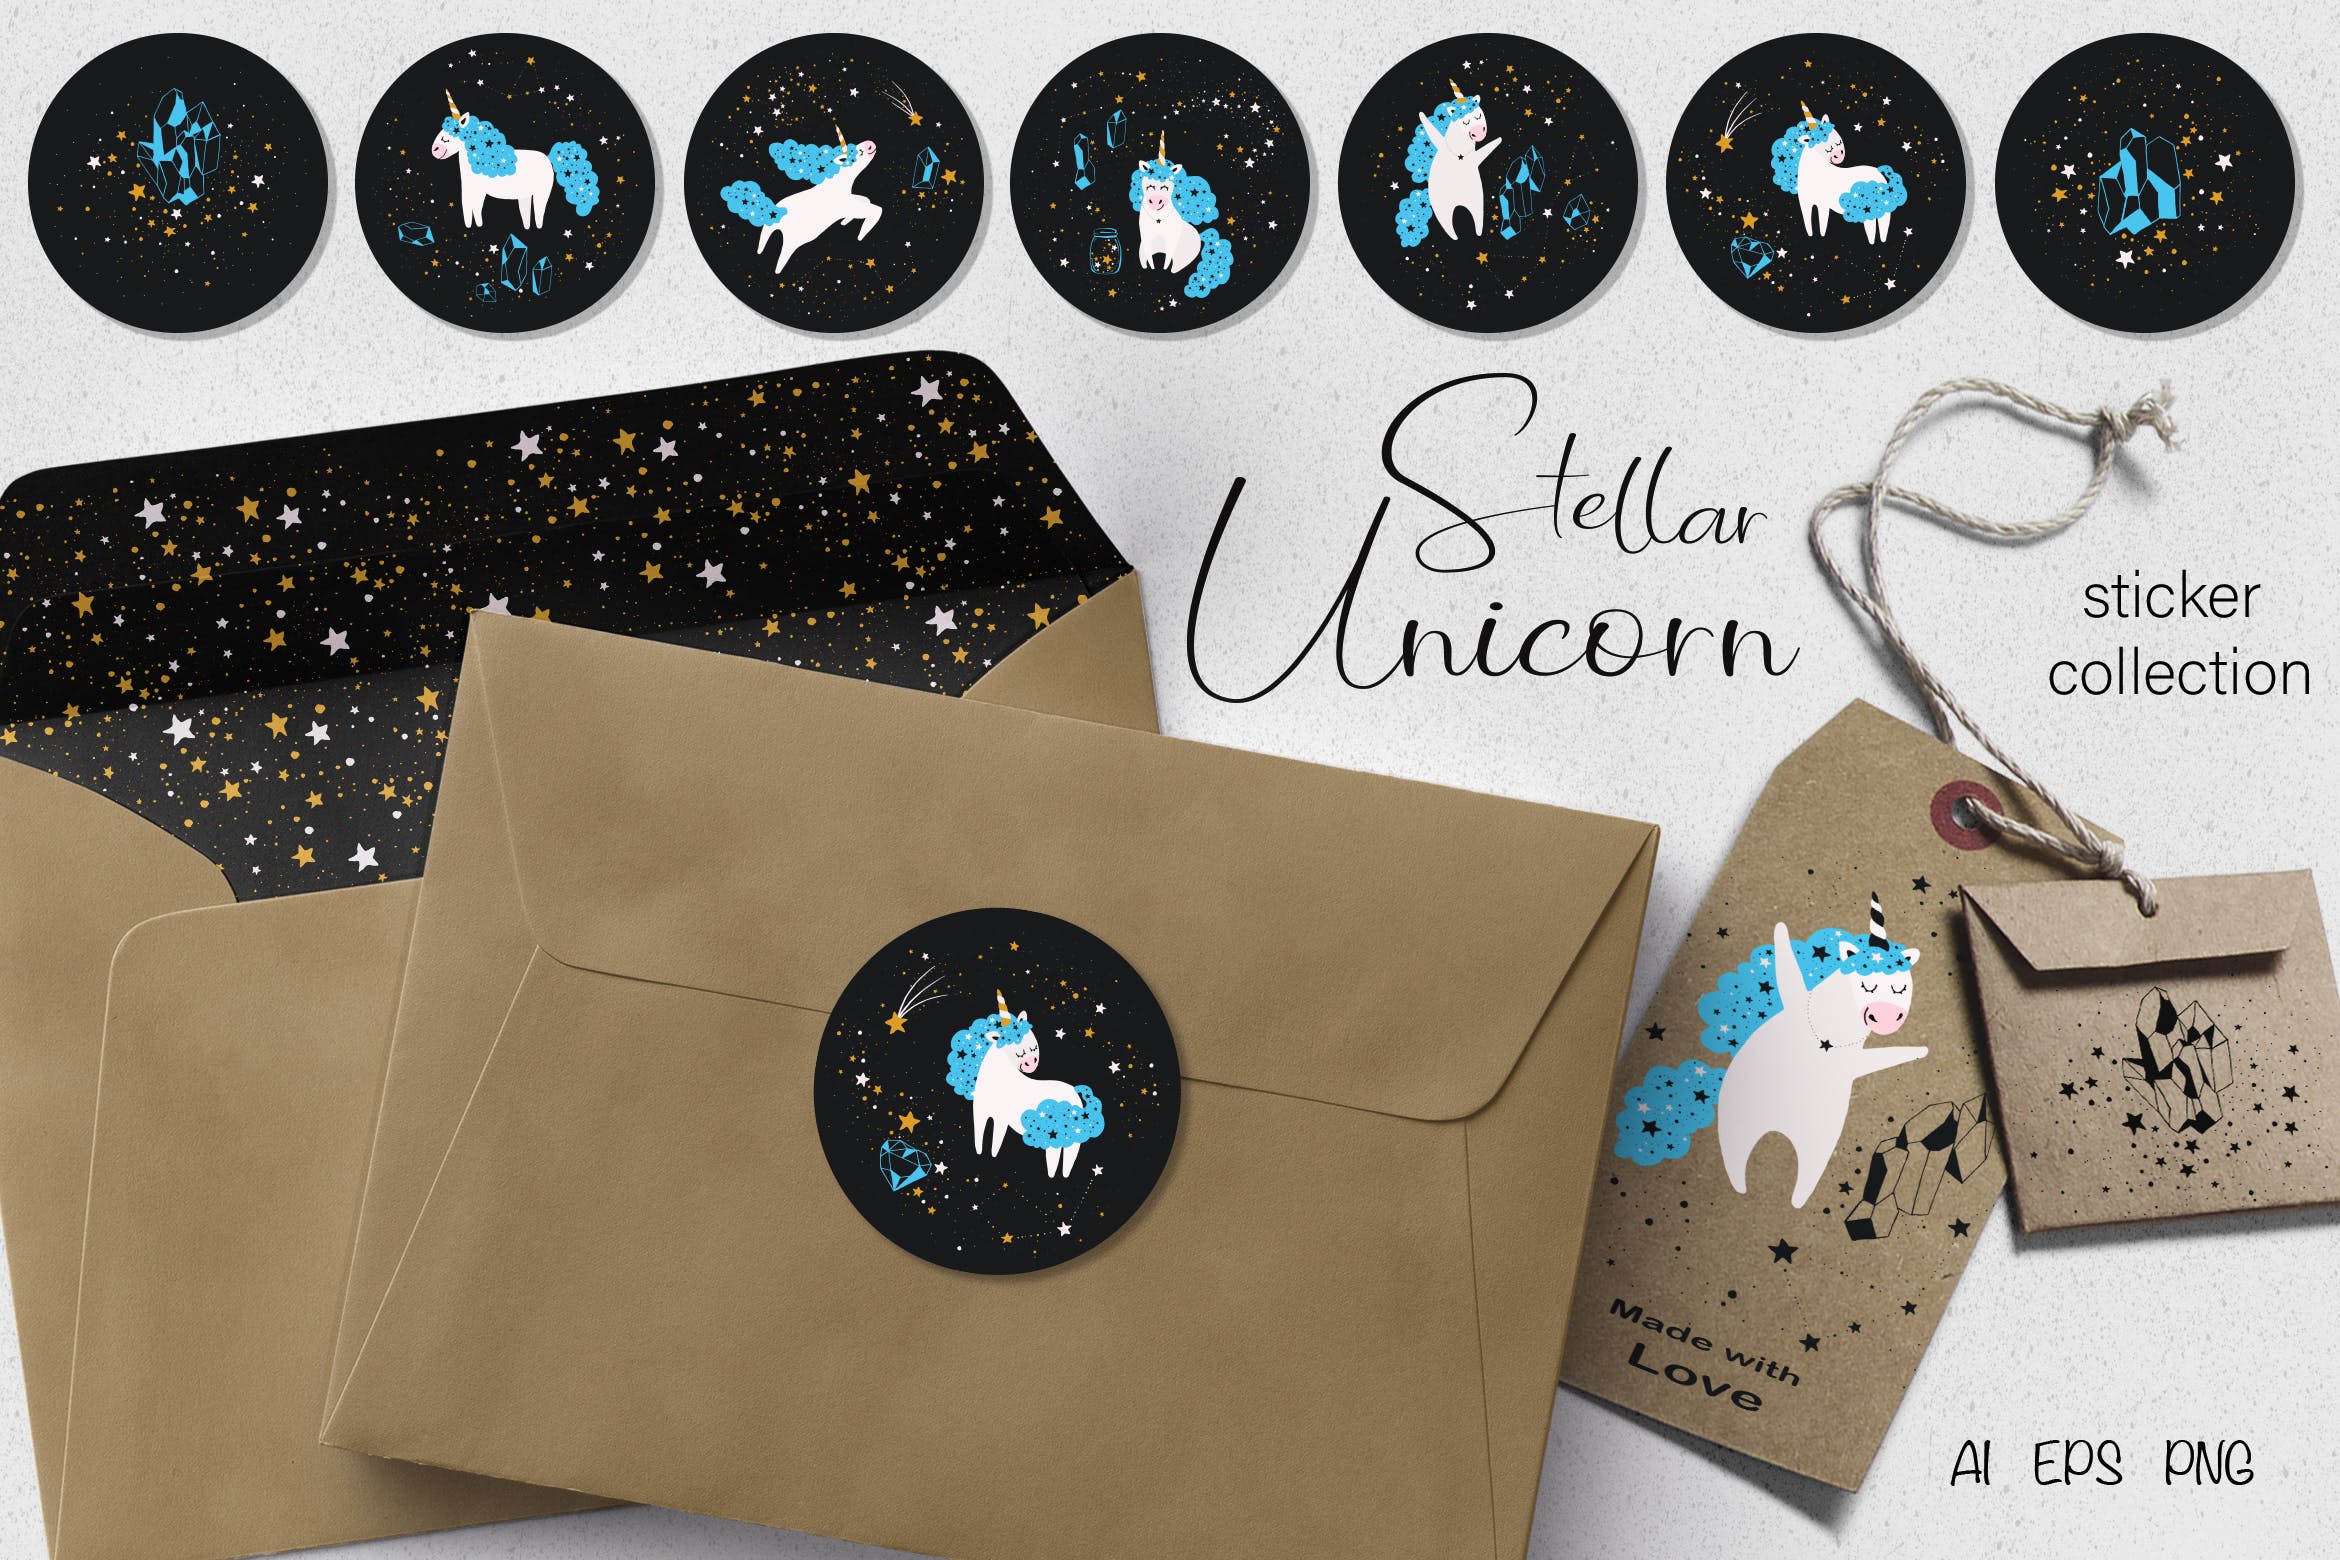 星座独角兽贴纸图案第一素材精选设计素材 Stellar Unicorn Stickers插图